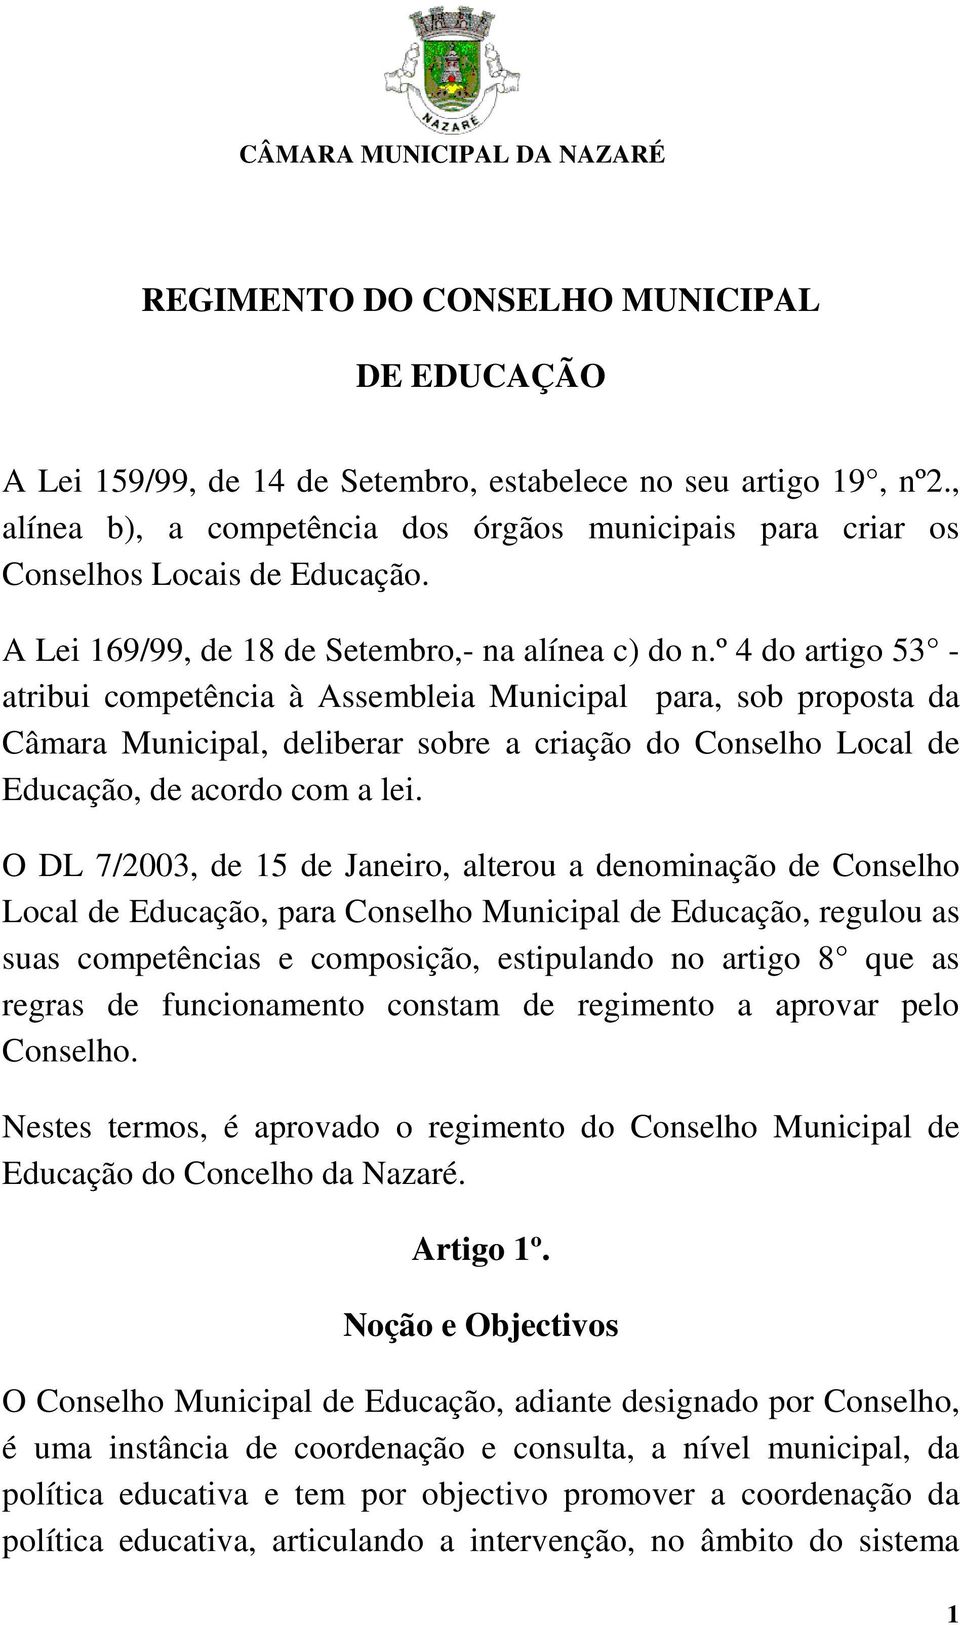 º 4 do artigo 53 - atribui competência à Assembleia Municipal para, sob proposta da Câmara Municipal, deliberar sobre a criação do Conselho Local de Educação, de acordo com a lei.